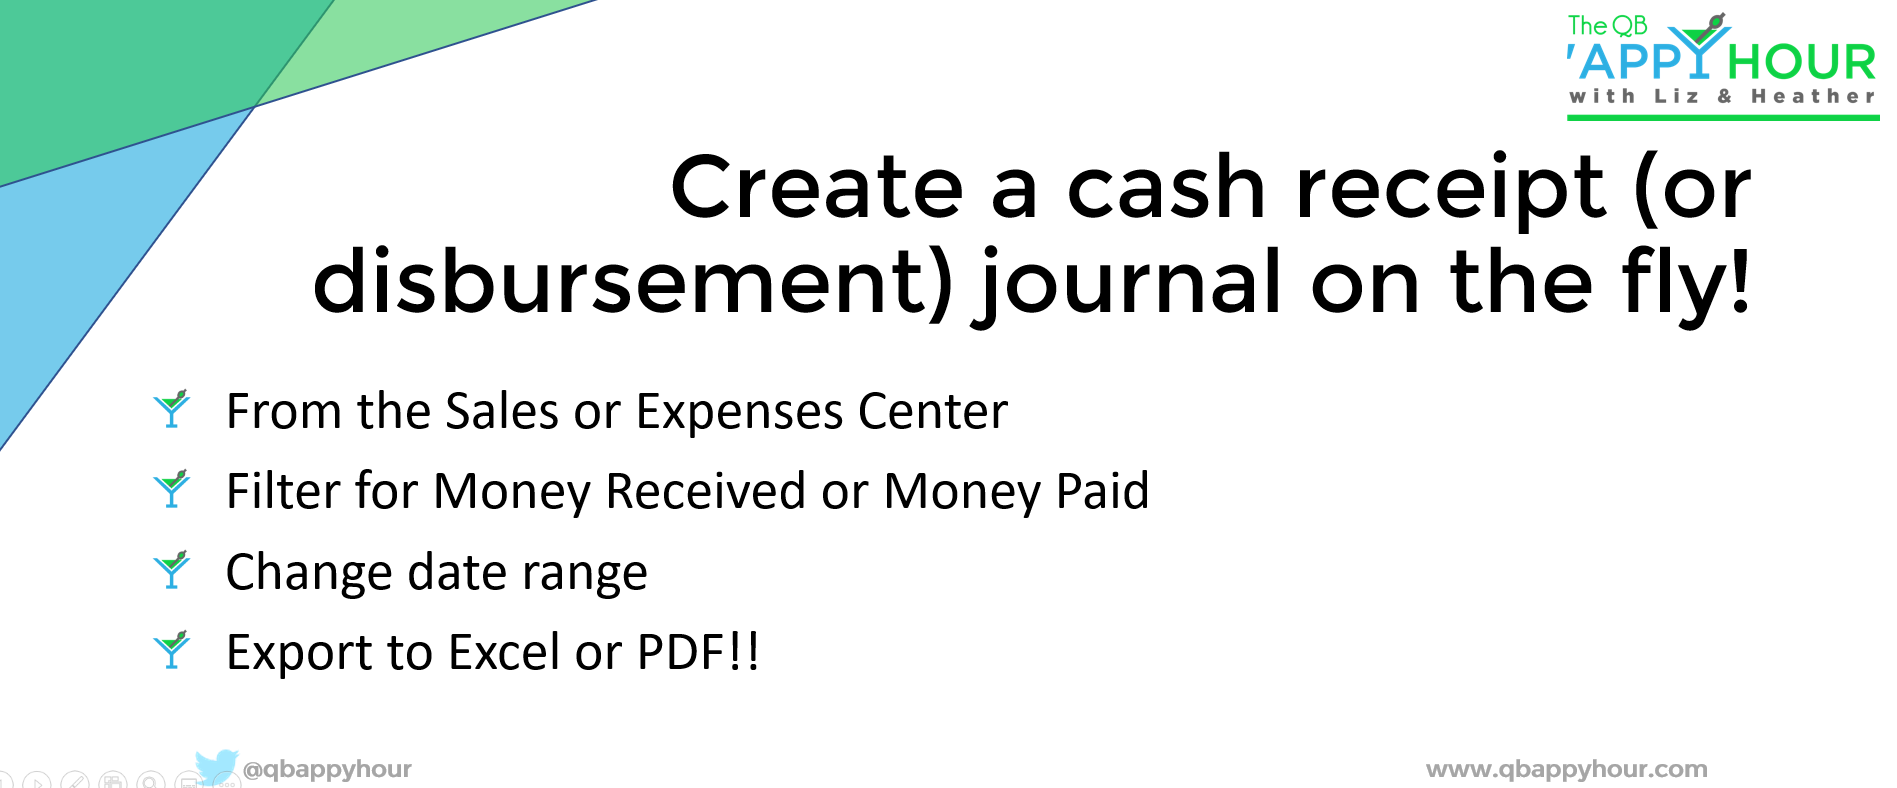 Create a cash receipt journal